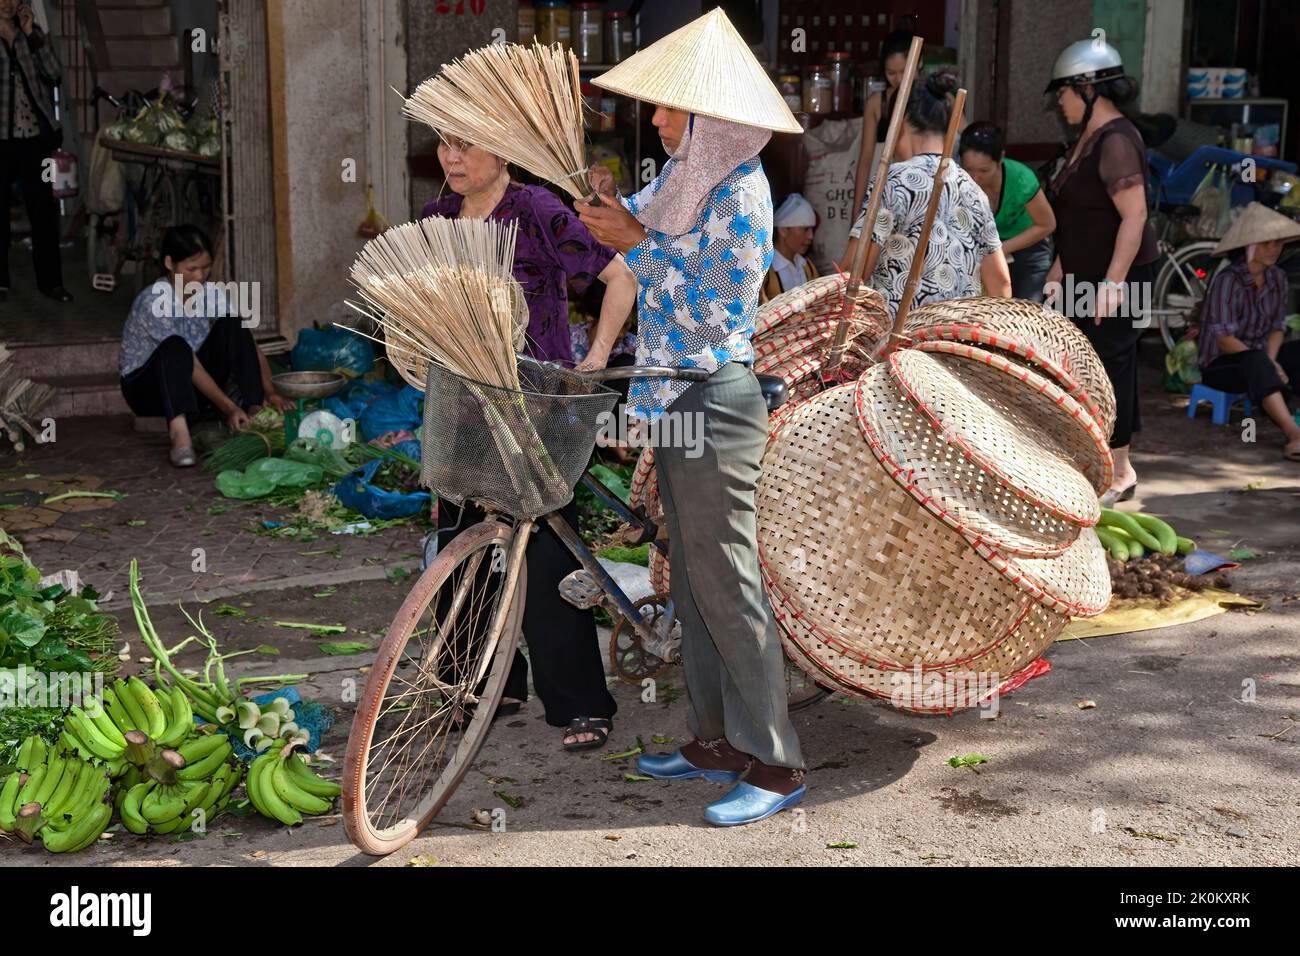 Vietnamesischer Händler mit Bambushut, der Korbartikel vom Fahrrad verkauft, arbeitet auf dem Straßenmarkt im Freien, Hai Phong, Vietnam Stockfoto